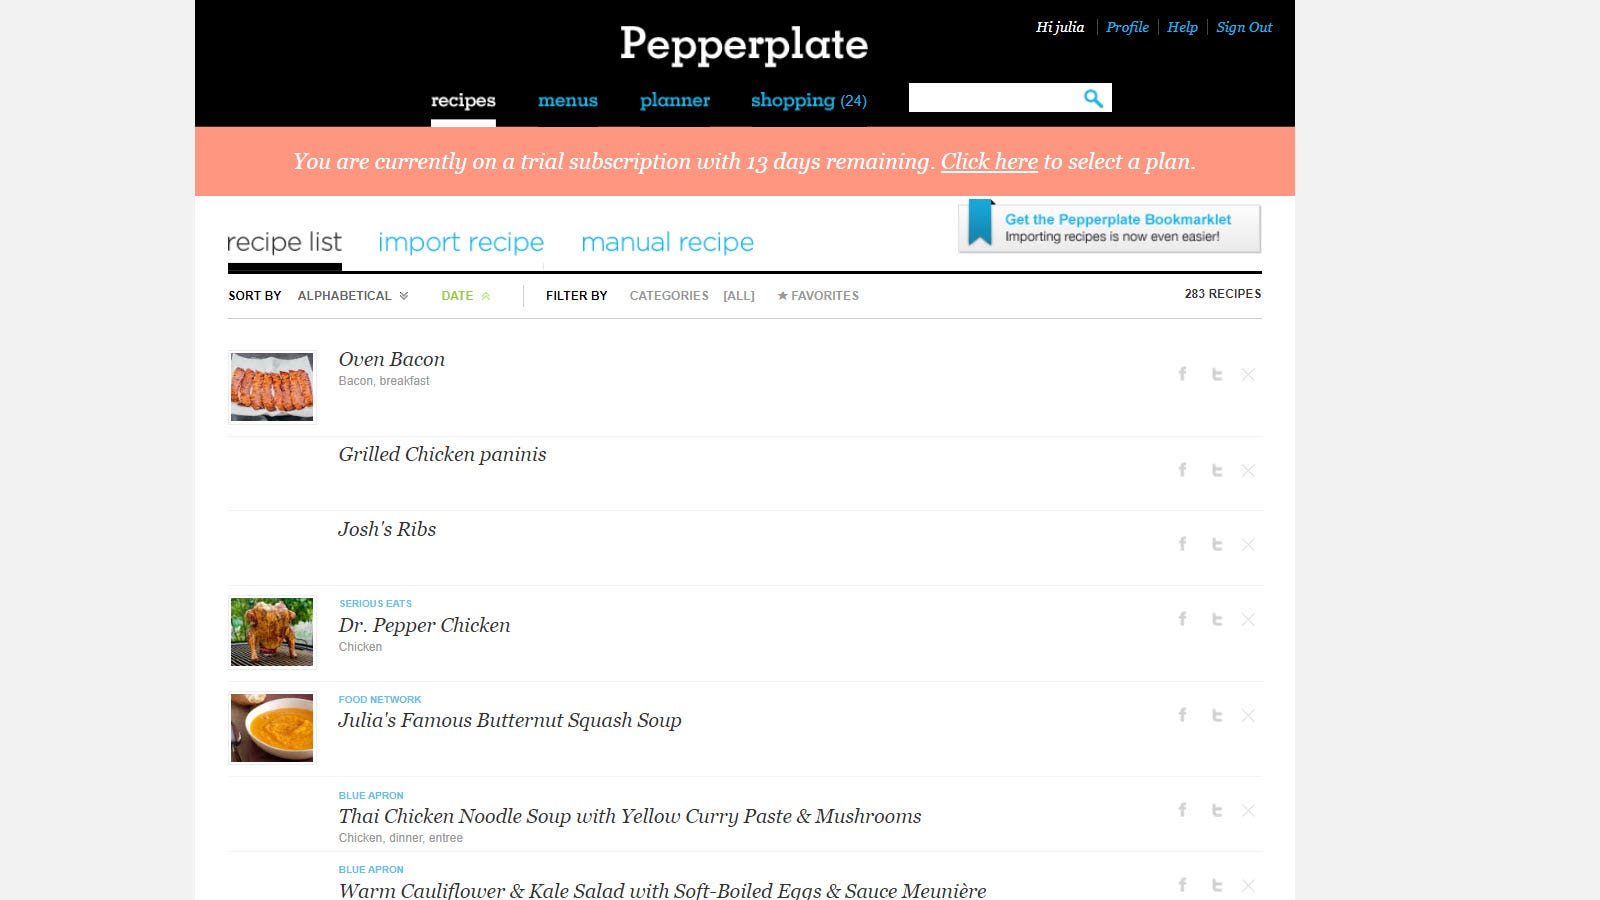 Trang web Pepperplate, hiển thị thông báo dùng thử và một số công thức nấu ăn.